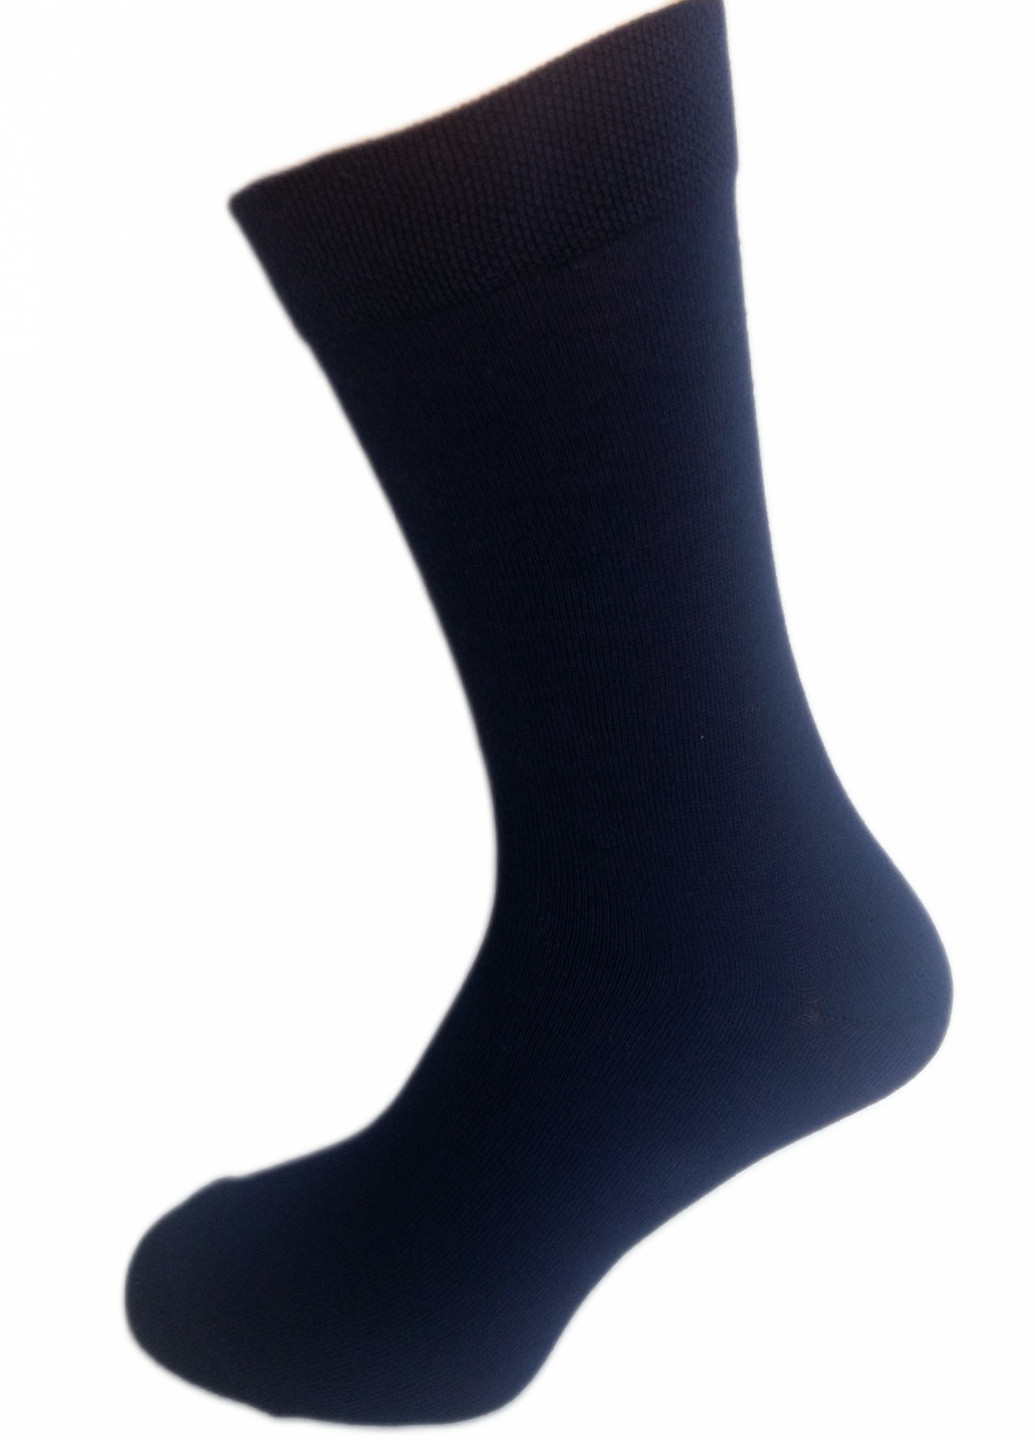 Шкарпетки чоловічі ТМ "Нова пара", 462 (в складі Акріл) НОВА ПАРА середня висота (257108320)